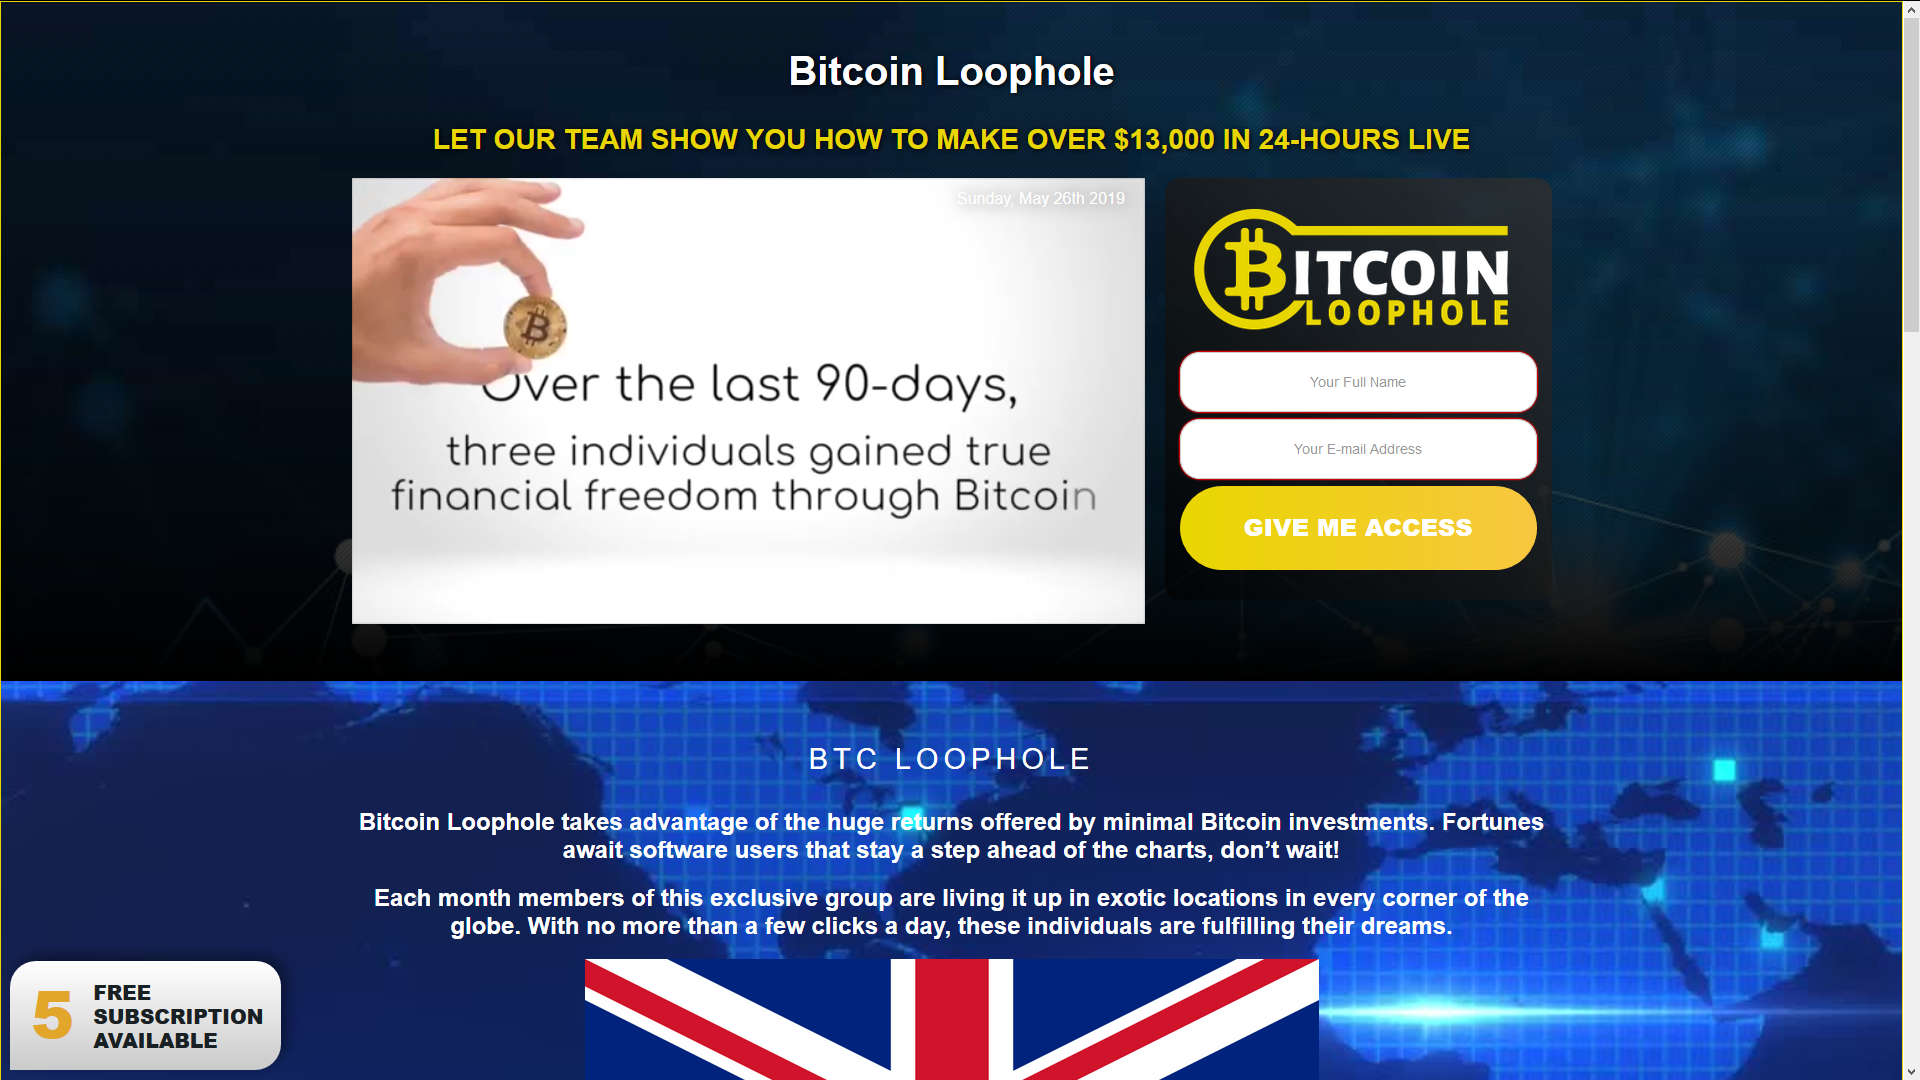 Recensione di Bitcoin Loophole: truffa oppure no? Scopriamolo insieme! - 1 hcBH34oYtjitAHg7W7Ws5A